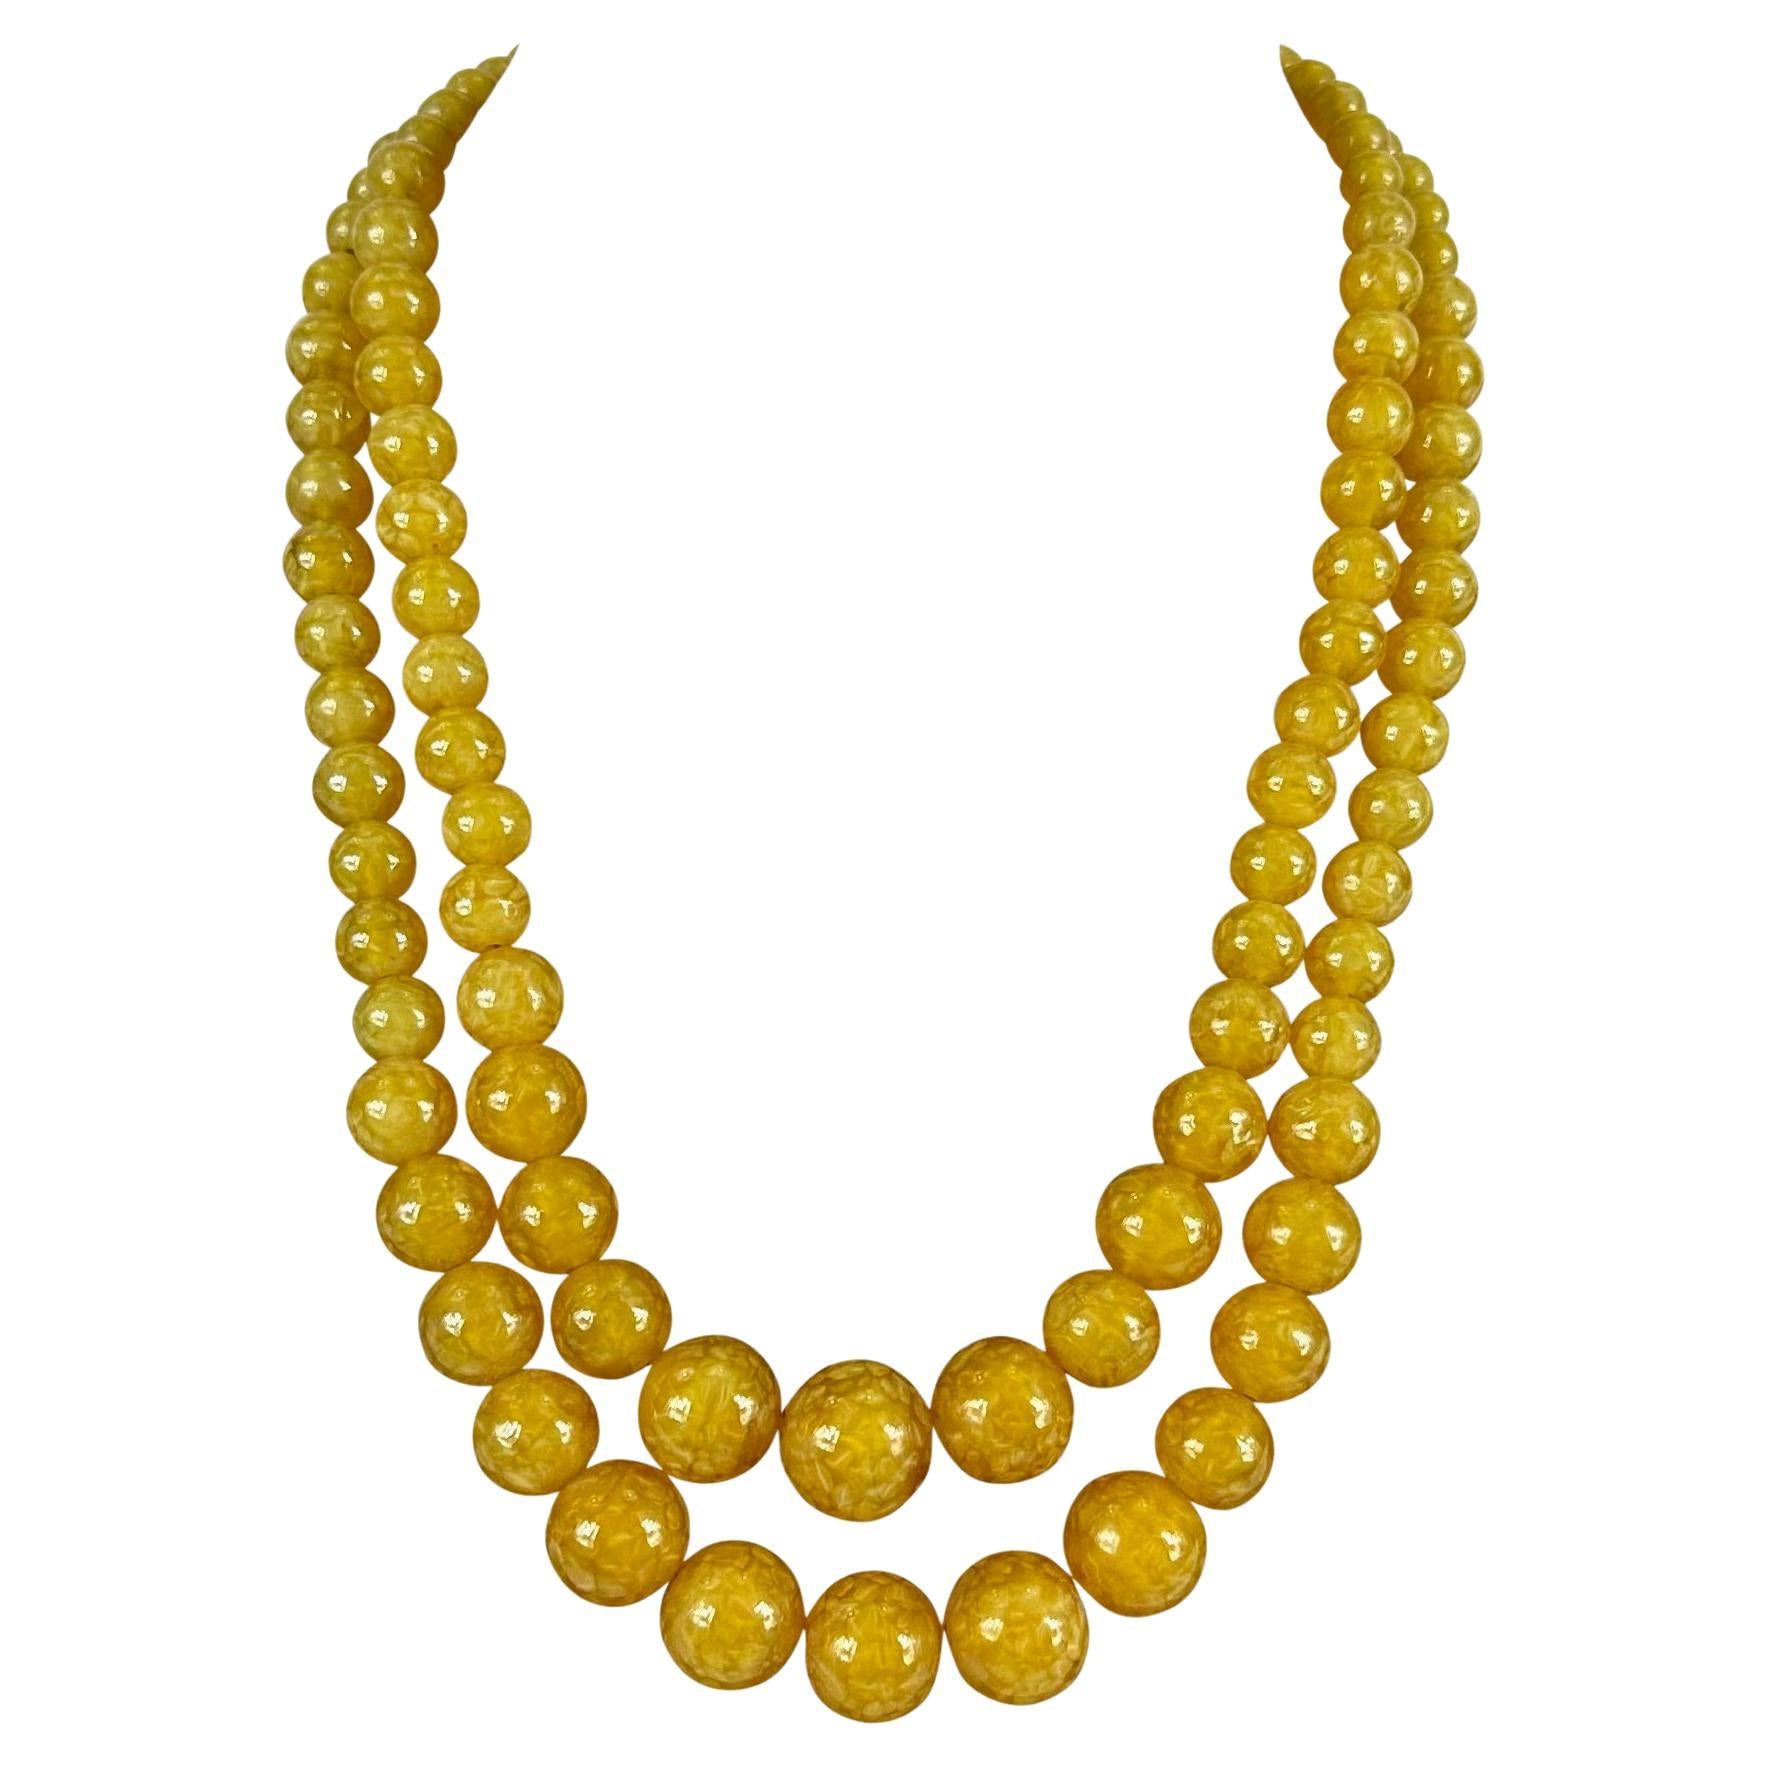 1962 Christian Dior signiert Honey abgestufte Perle Harz Doppel Halskette